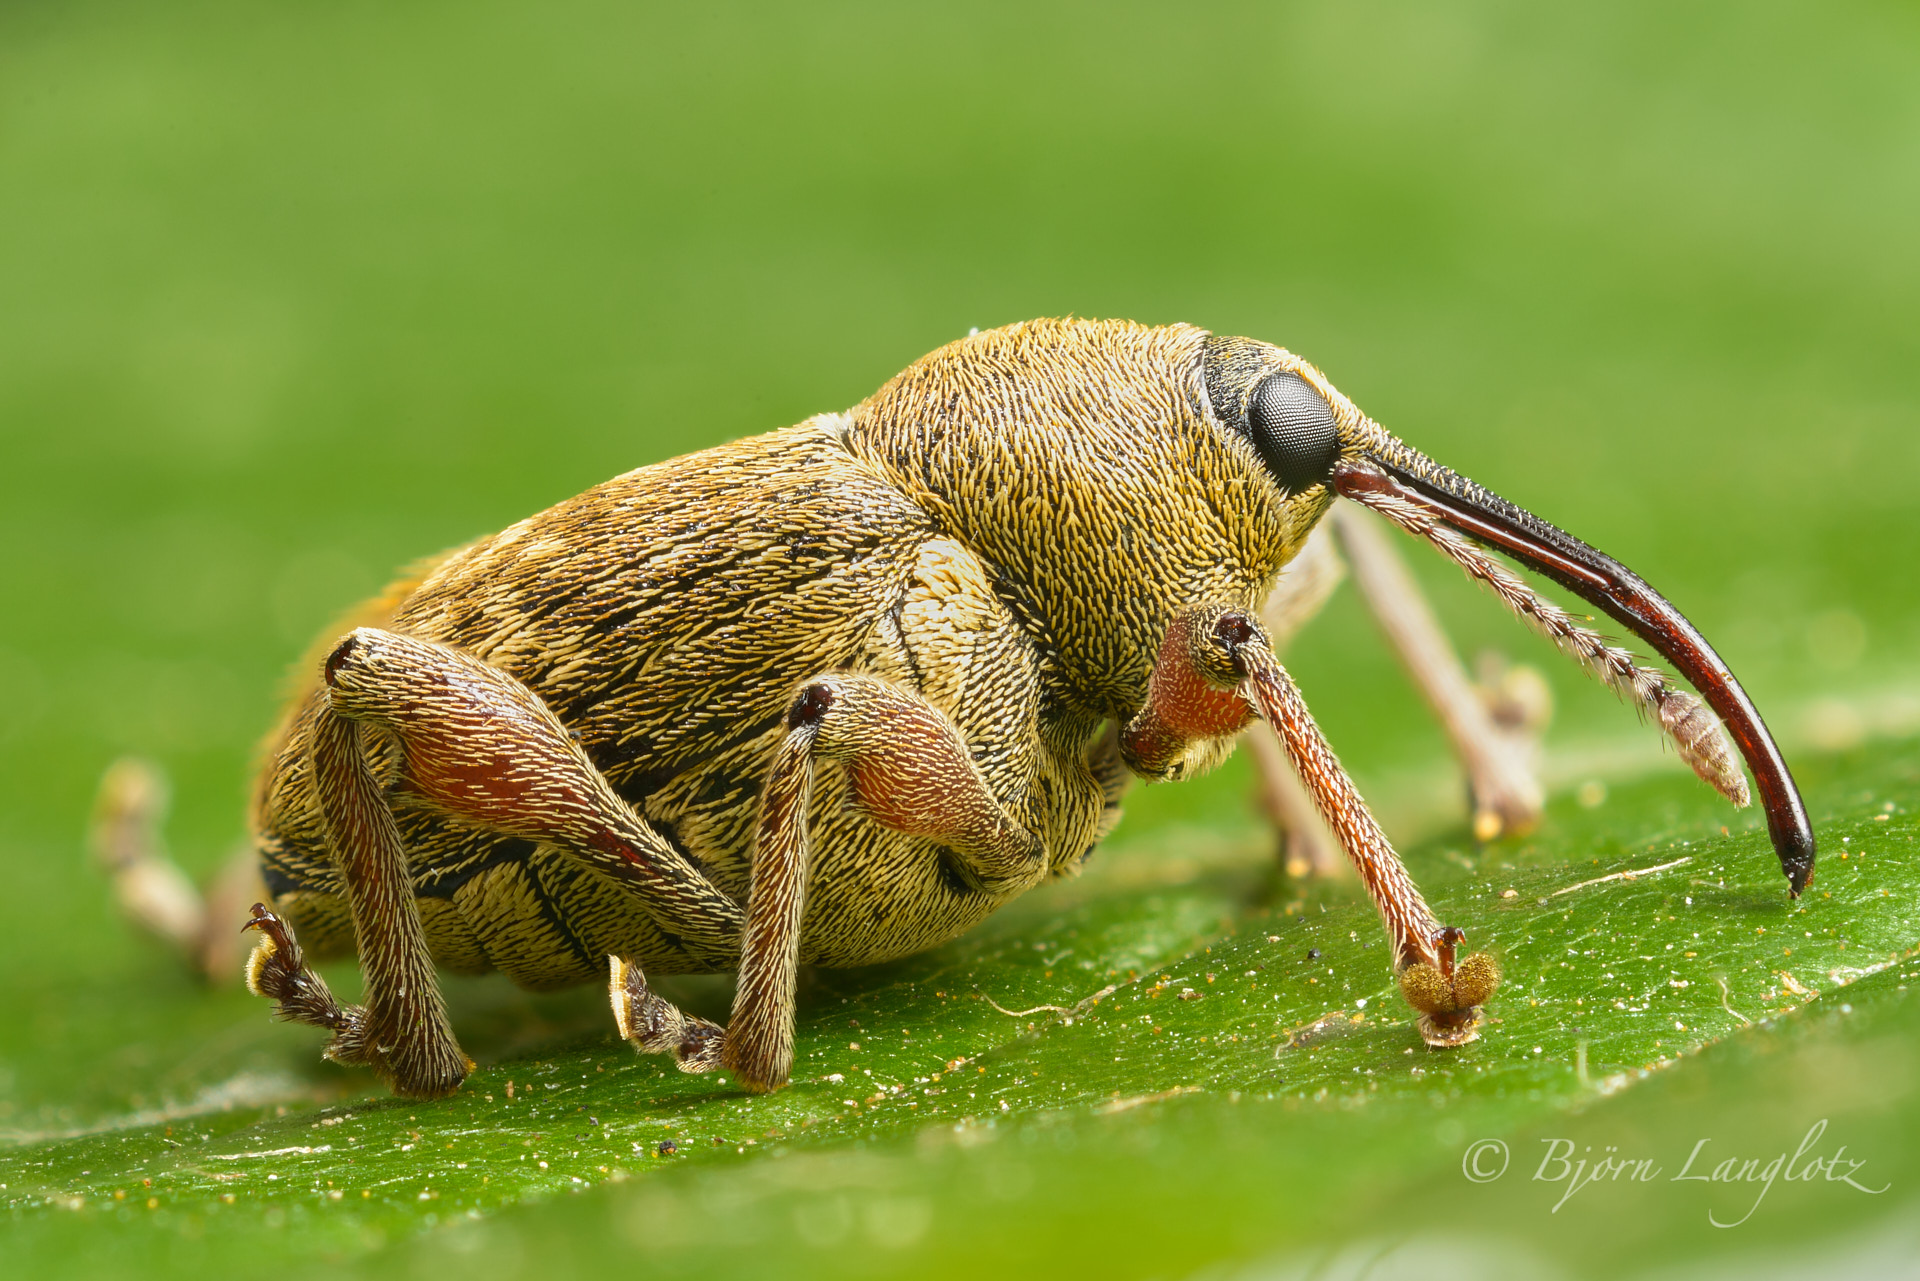 Der Haselnußbohrer (Curculio nucum) gilt als Schädling. Aber dennoch ist er ein schlön anzuschauender Käfer. Focus Stack aus 68 Einzelaufnahmen.